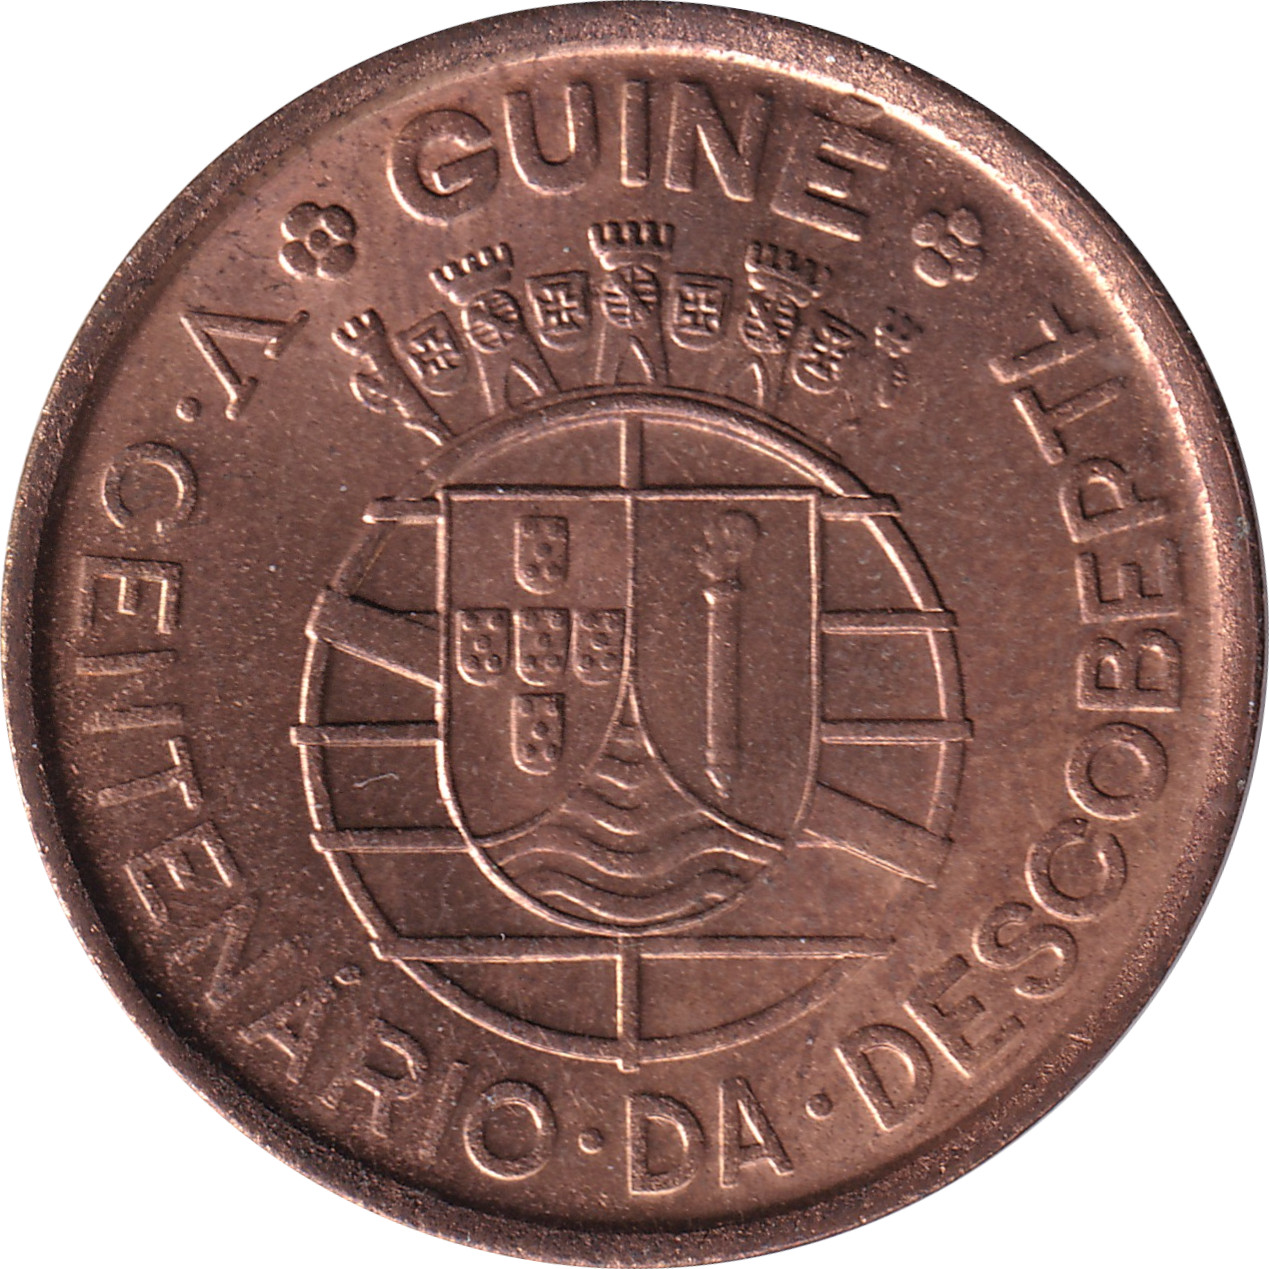 1 escudo - Découverte - 500 years